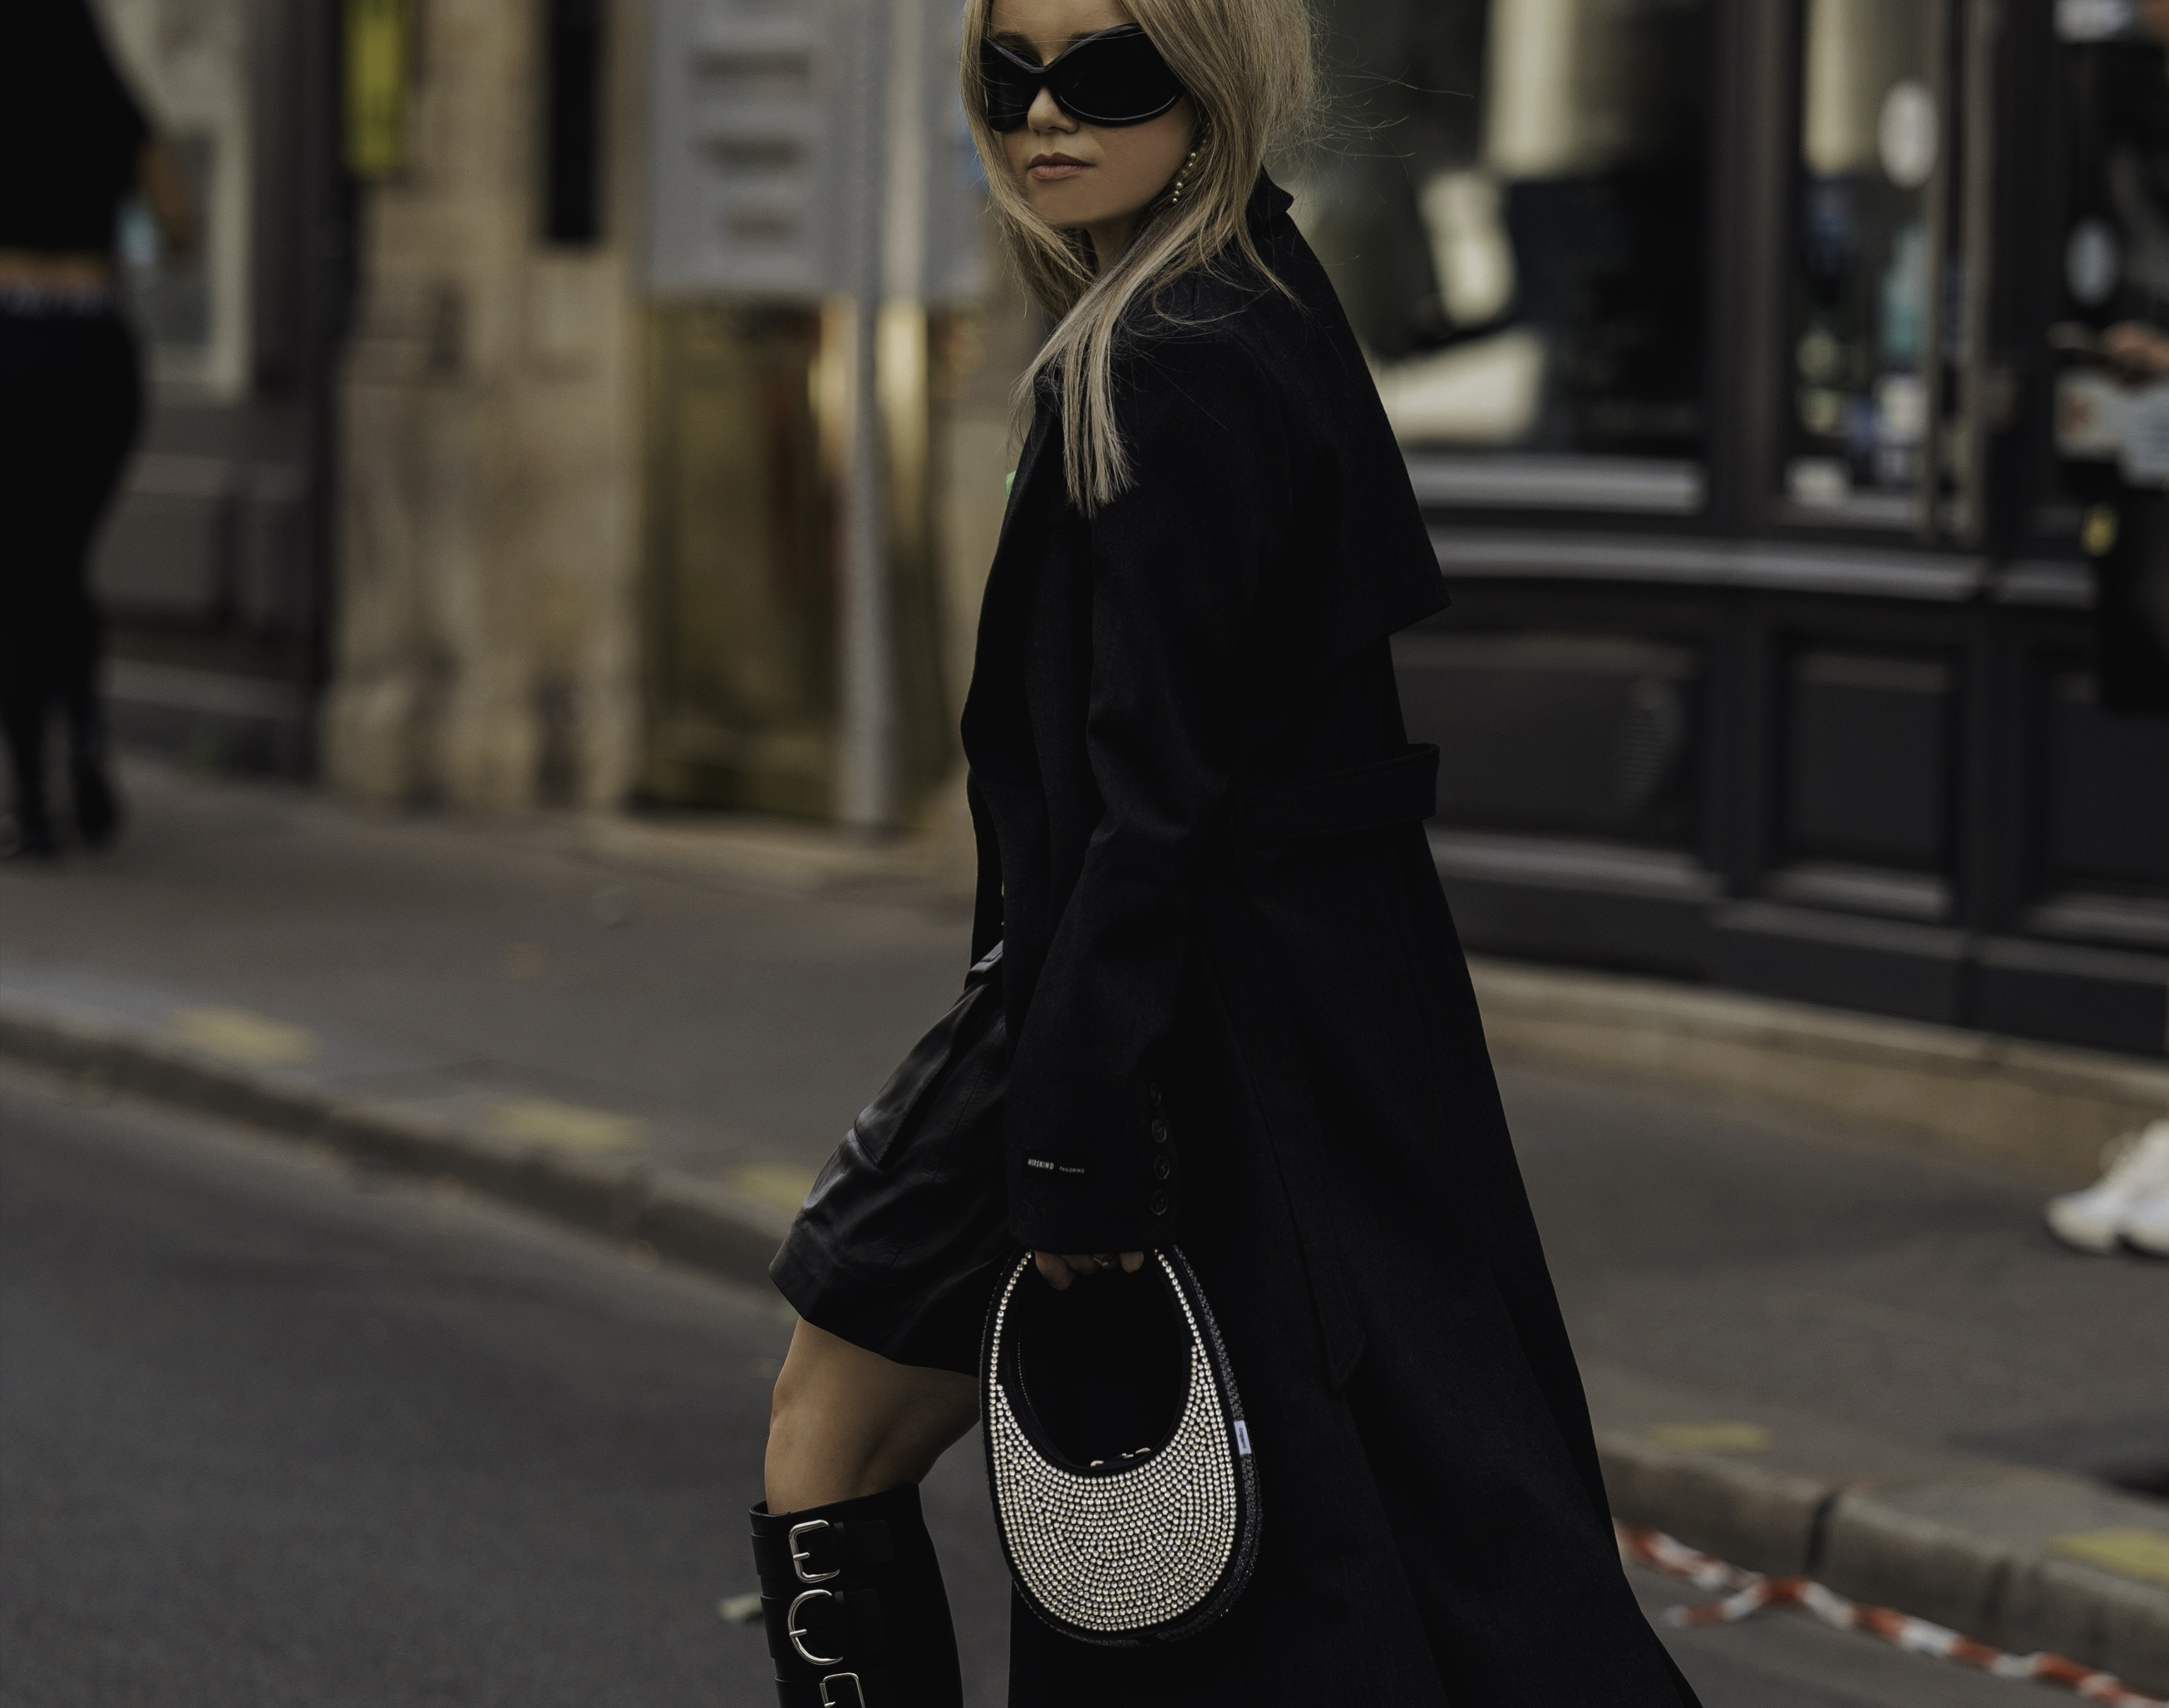 During Paris Fashion Week